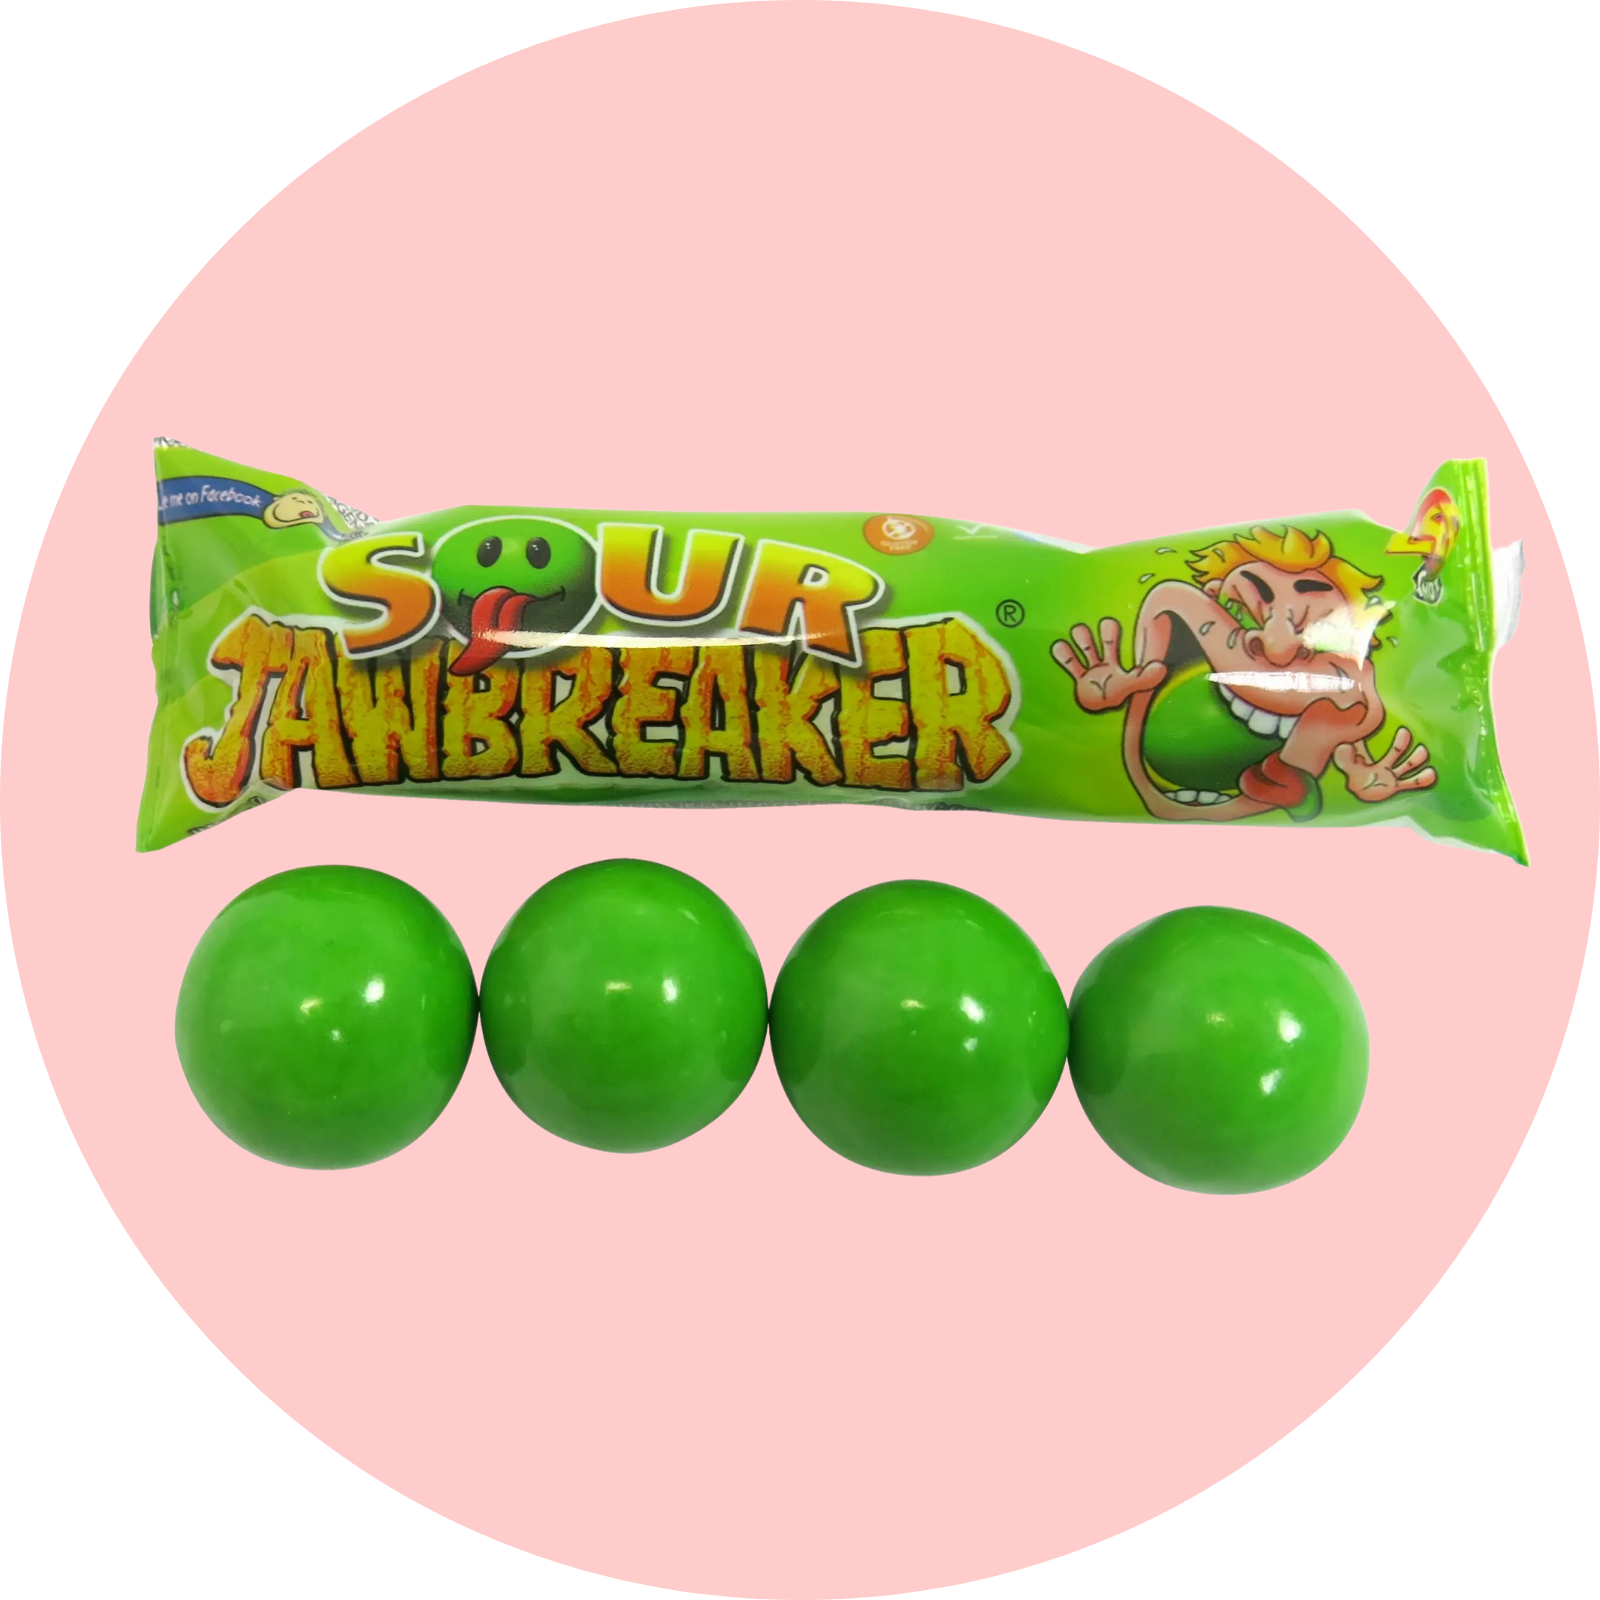 Sour Jawbreakers